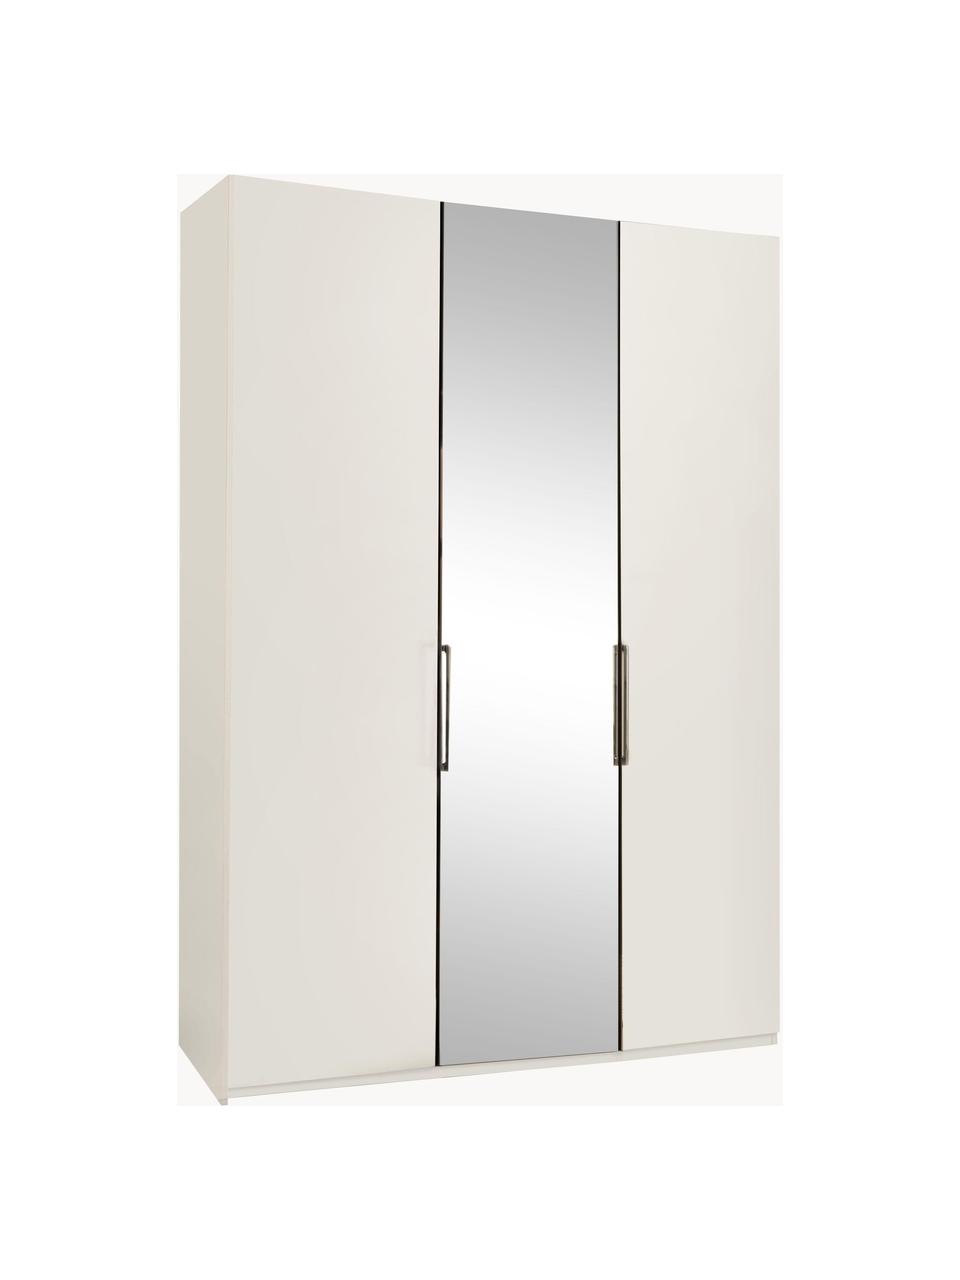 Šatní skříň se zrcadlovými dveřmi Monaco, 3dvéřová, Bílá, se zrcadlovými dveřmi, Š 149 cm, V 216 cm